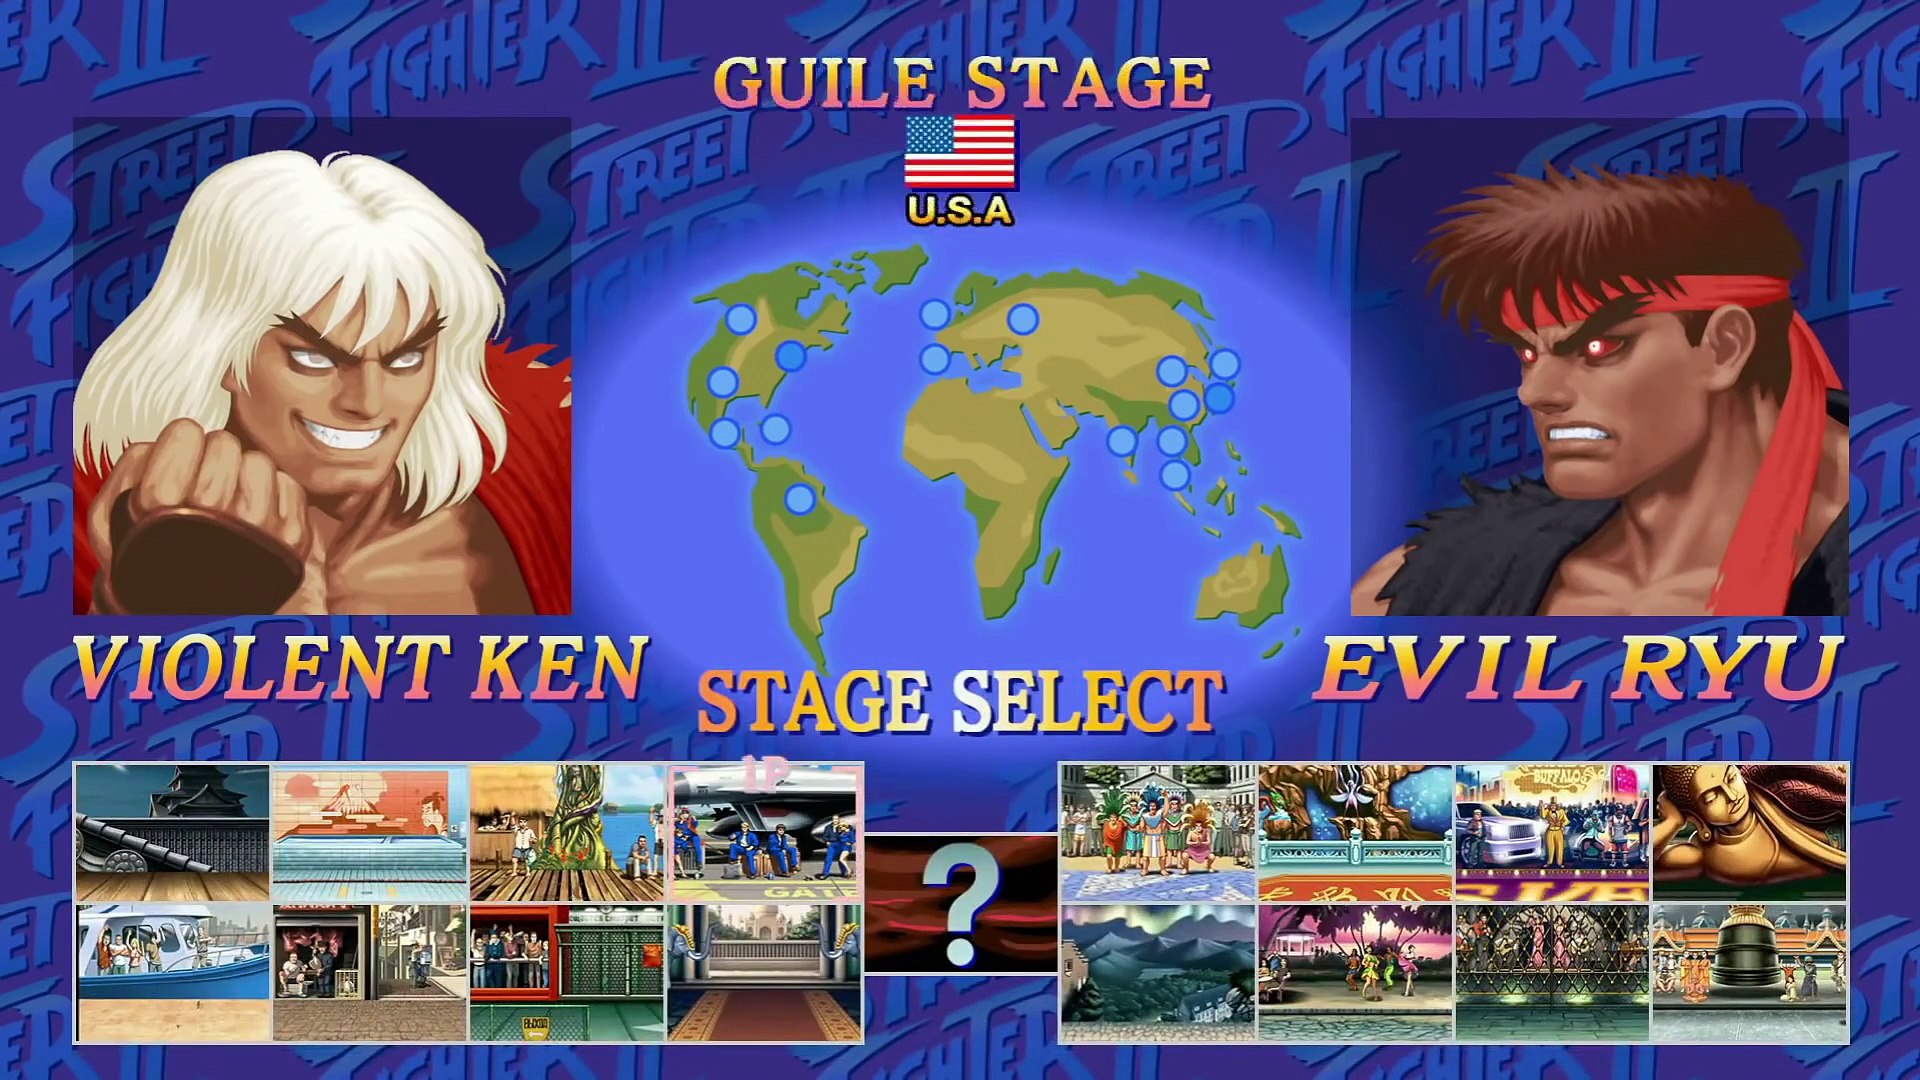 Ultra Street Fighter II TFC] Evil Ryu VS Akuma Gameplay 